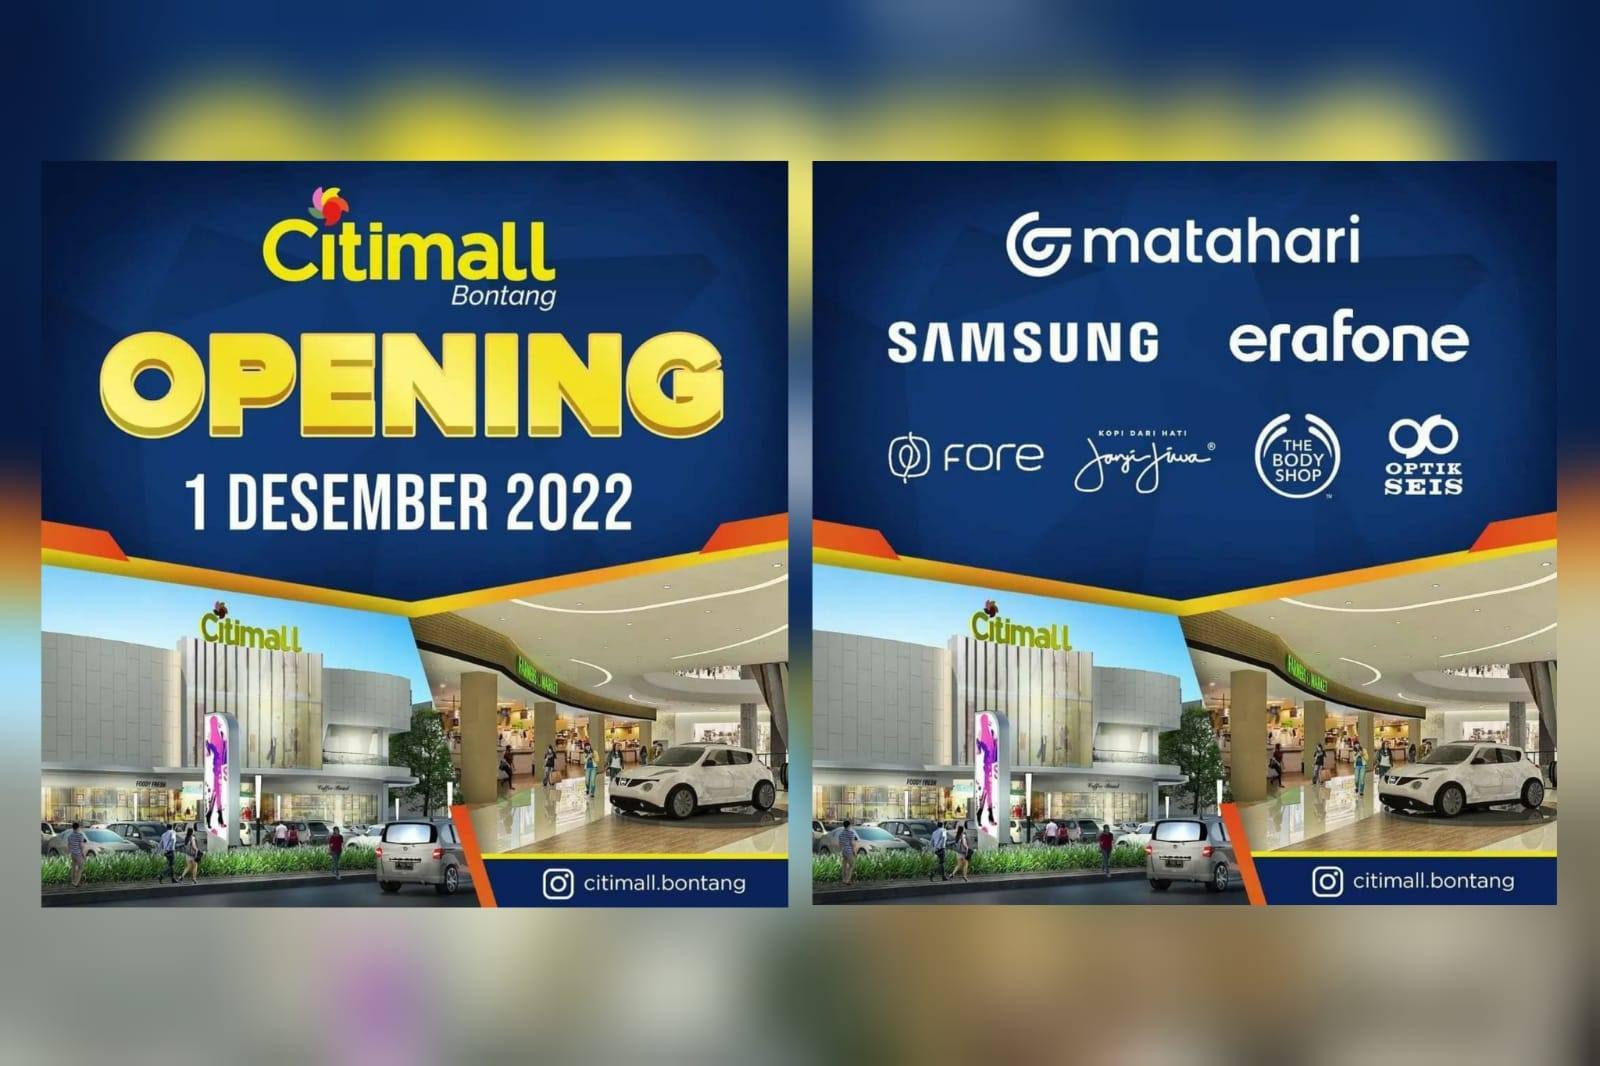 Bontang Citi Mall Opening 1 Desember, Ini Brand yang Bakal Buka